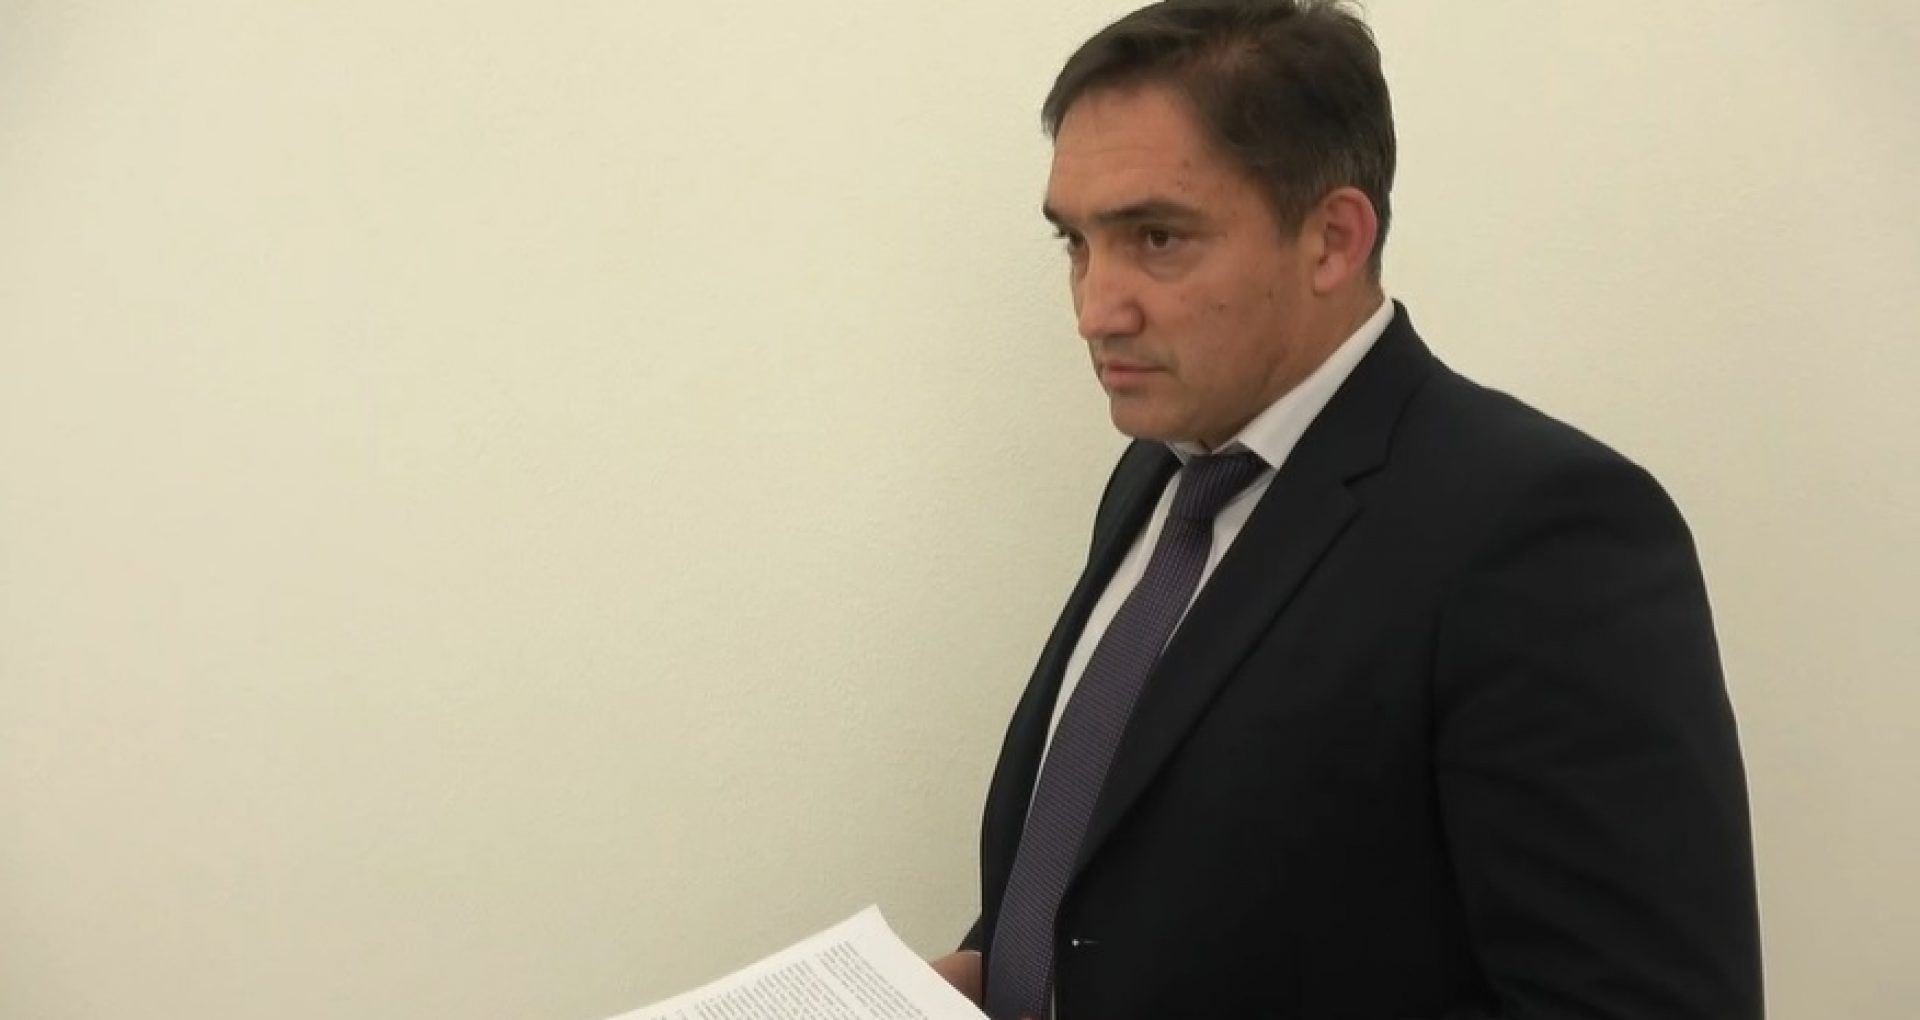 DOC/ Ministrul Justiției anunță că procurorul general a fost suspendat din funcție: procurorul anticorupție desemnat de CSP să examineze sesizarea lui Carp a decis inițierea urmăririi penale împotriva lui Stoianoglo